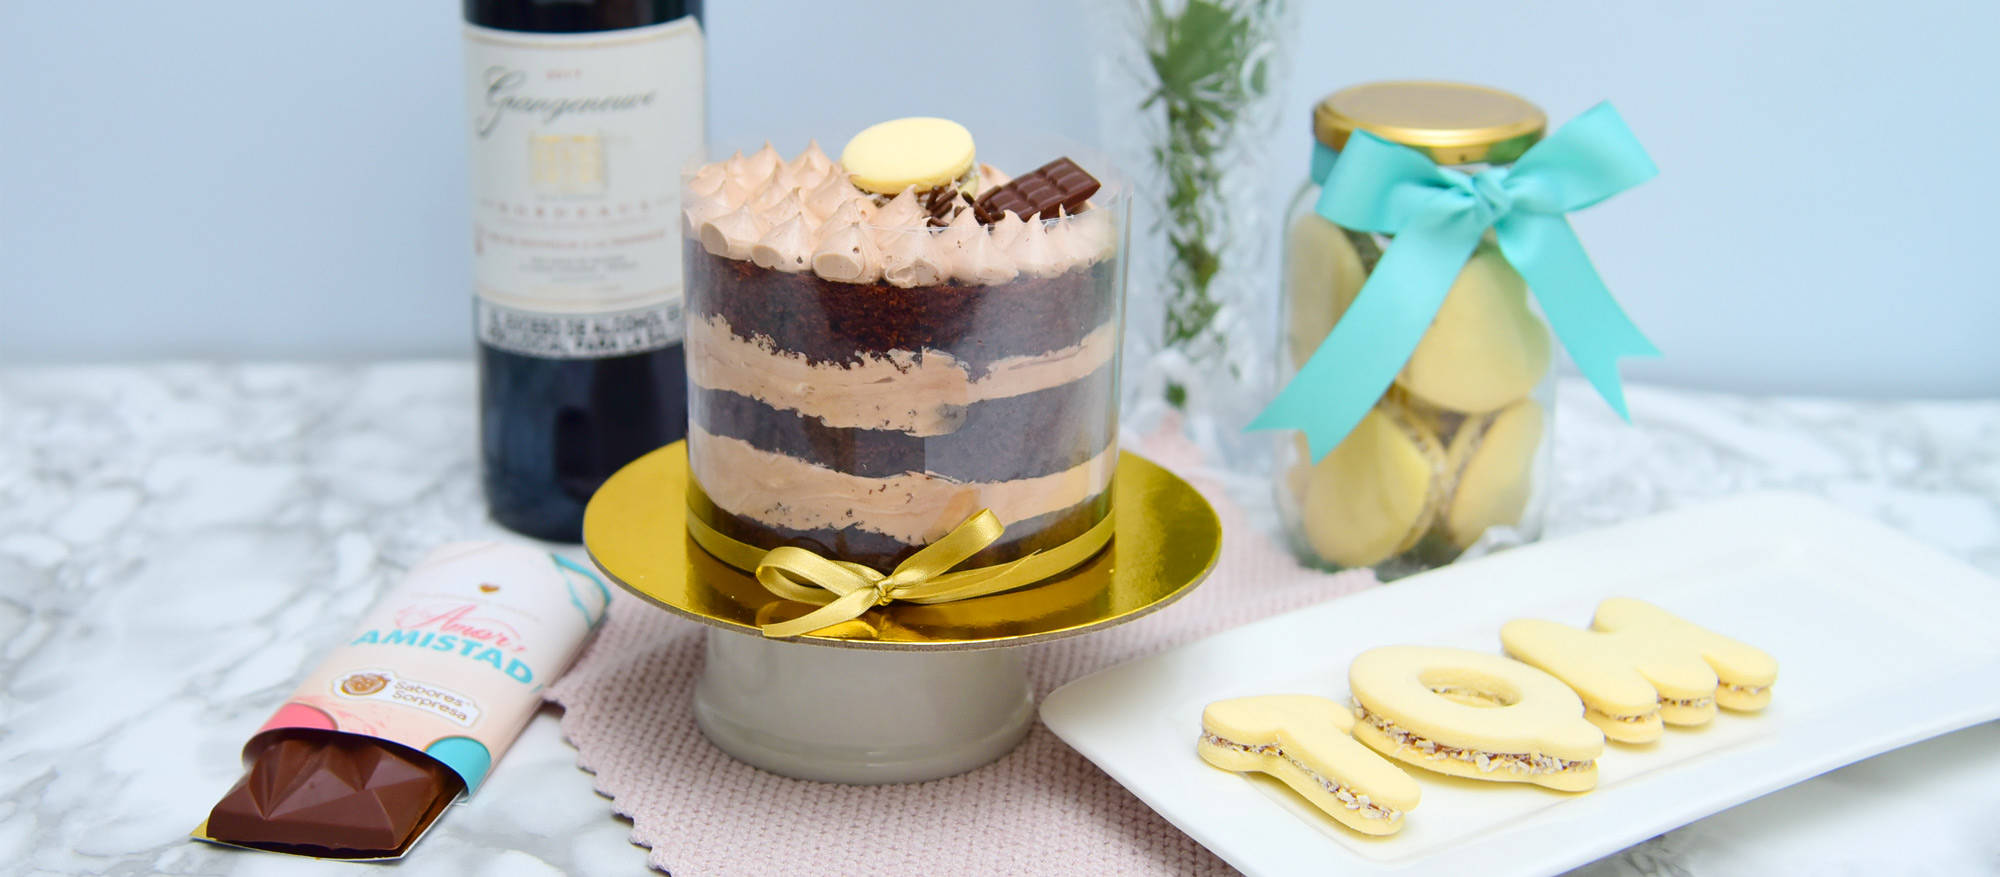 Torta de Chocolate en un plato dorado, a su derecha una barra de chocolate, detrás una botella de vino, a su izquierda unas galletas con las letras TQM y un tarro de galletas con una cinta azul